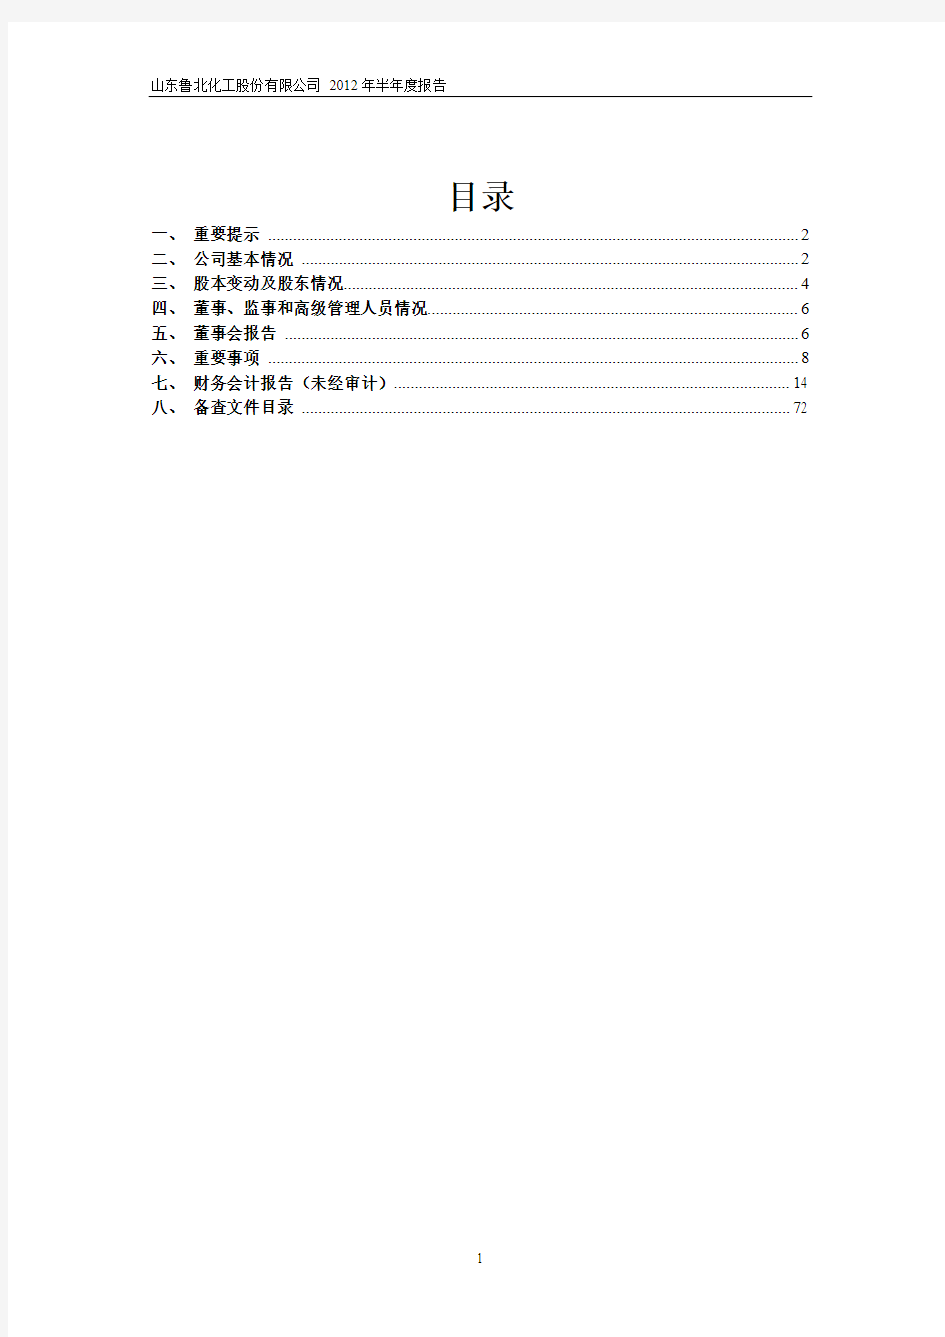 鲁北化工(600727)：2012年半年度报告